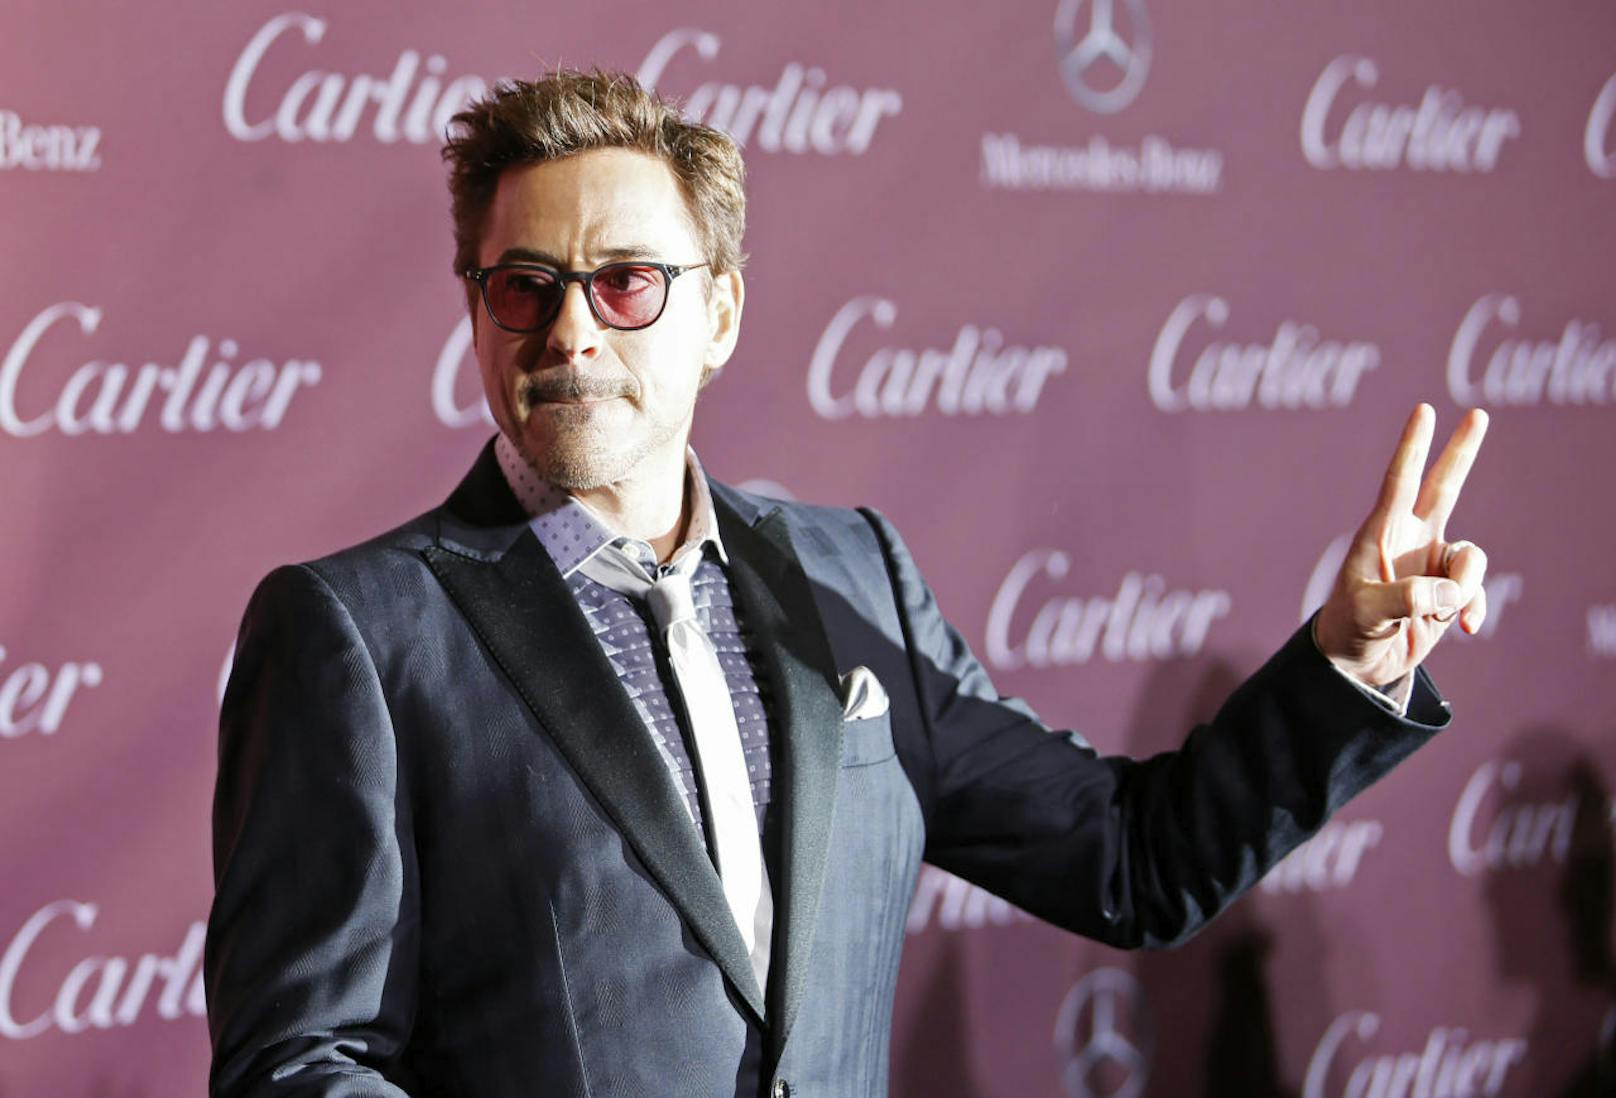 Robert Downey packt aus: "Mit 6 Jahren nahm ich Drogen"